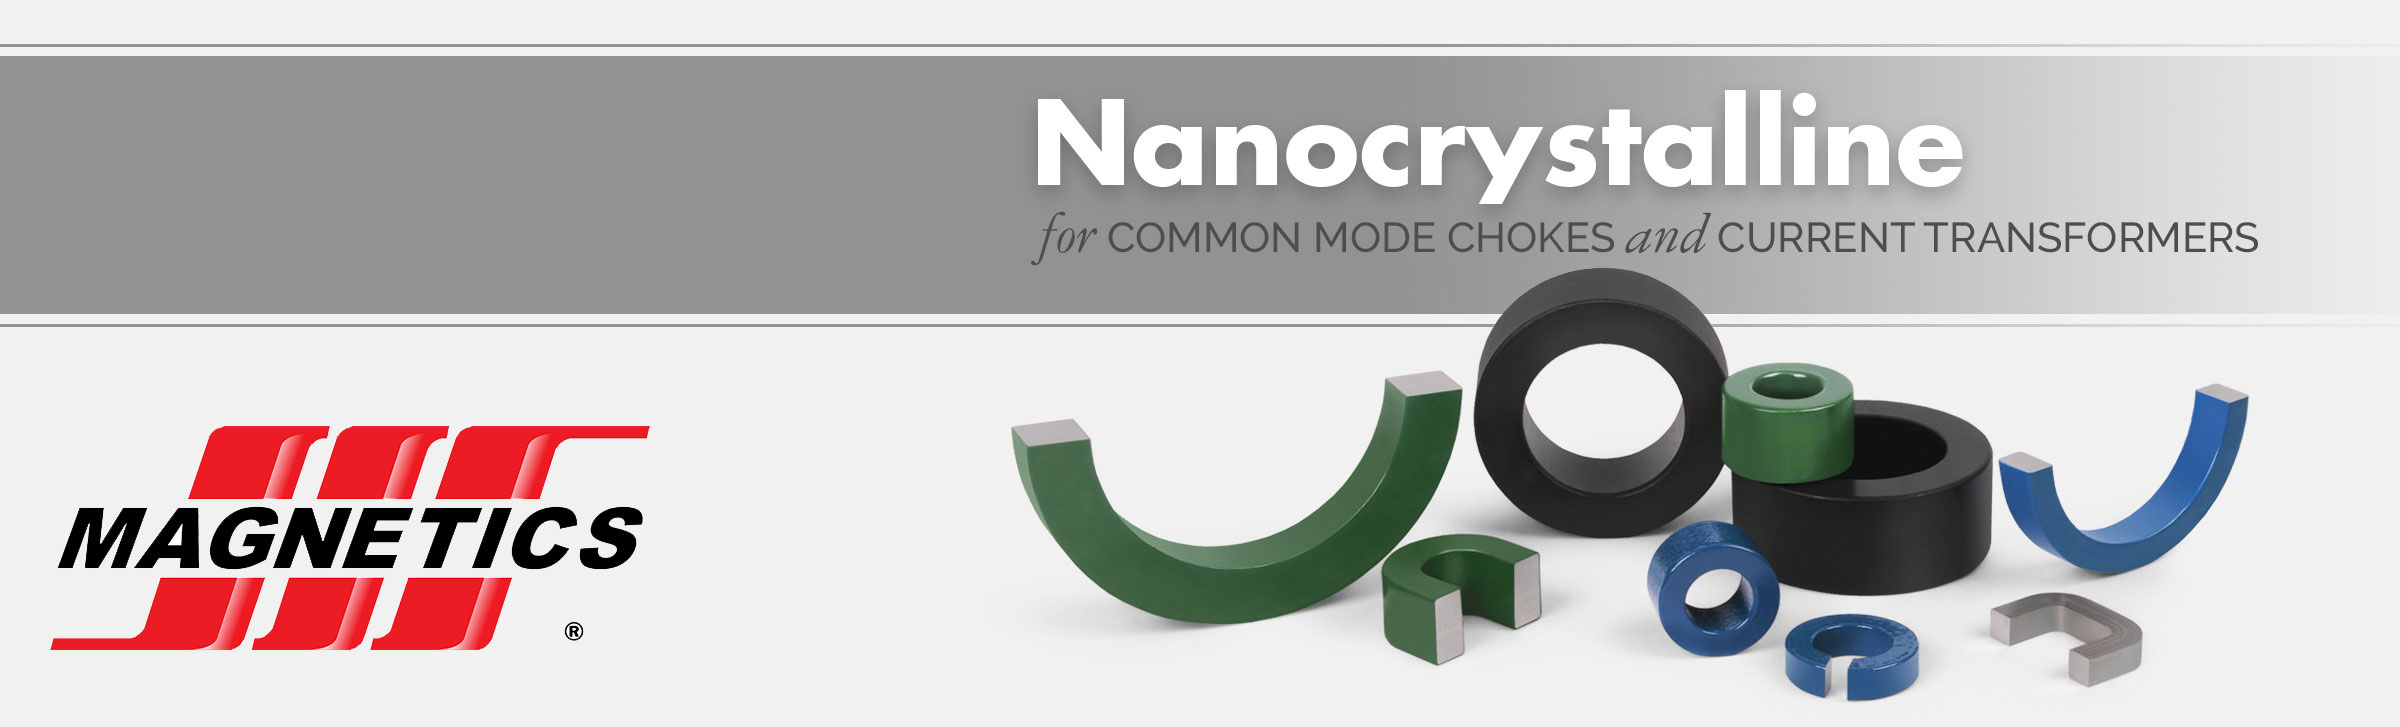 nanocrystalline-banner.jpg